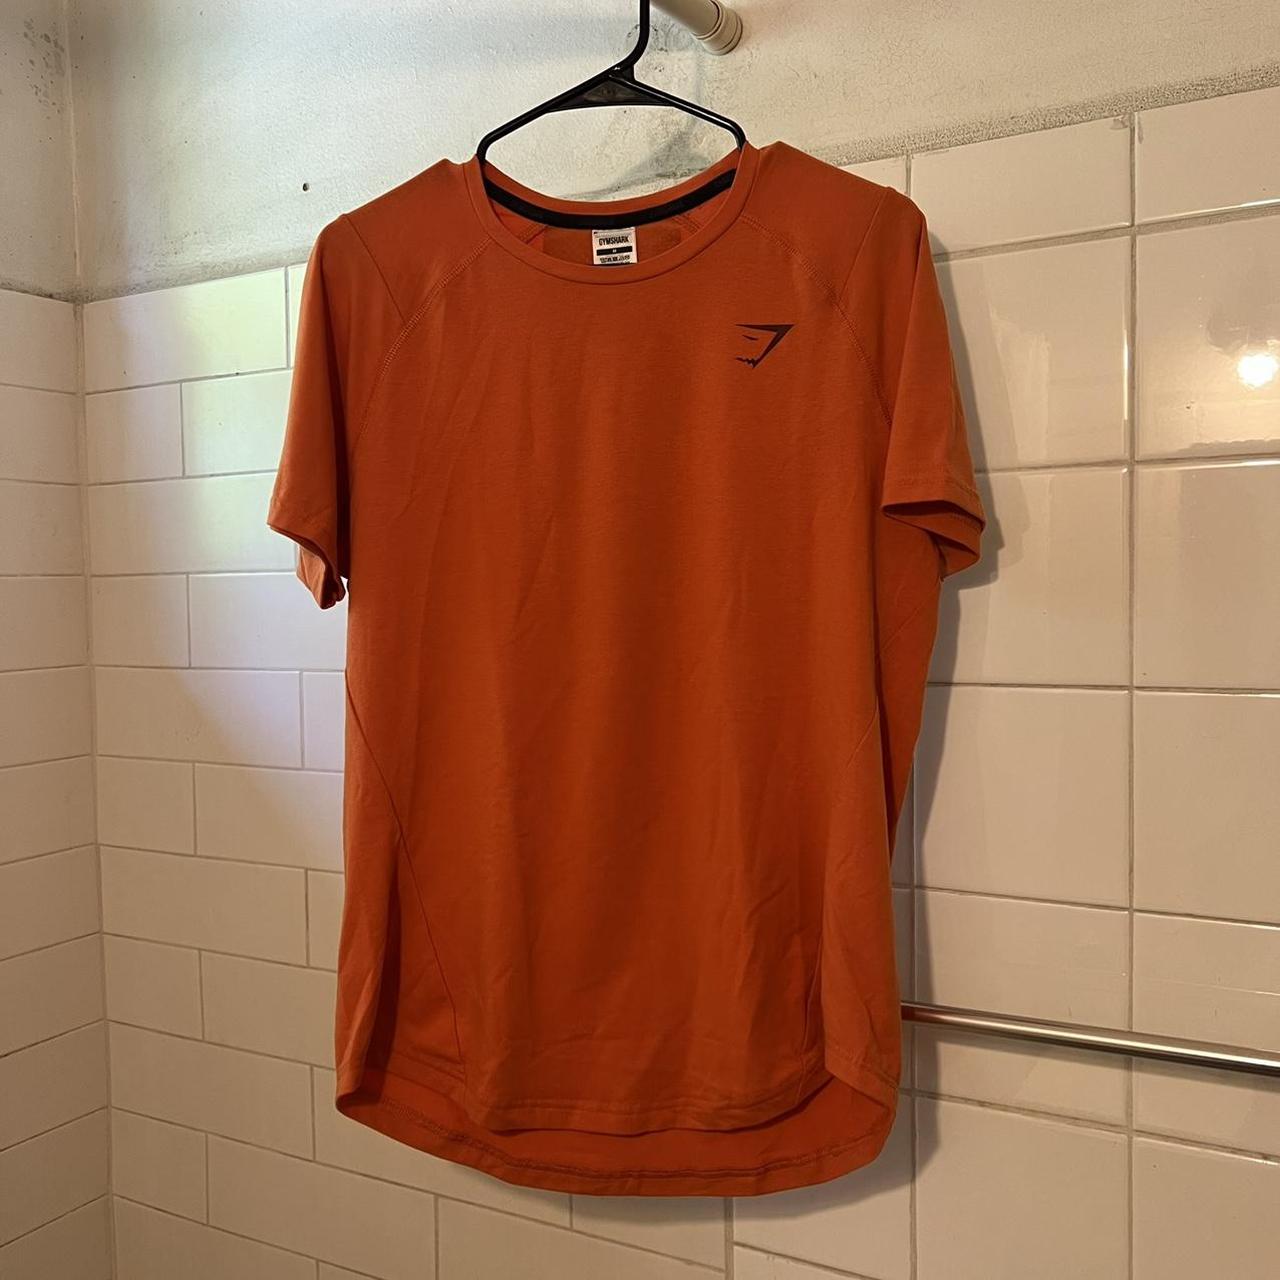 Orange GYMSHARK workout shirt - Depop